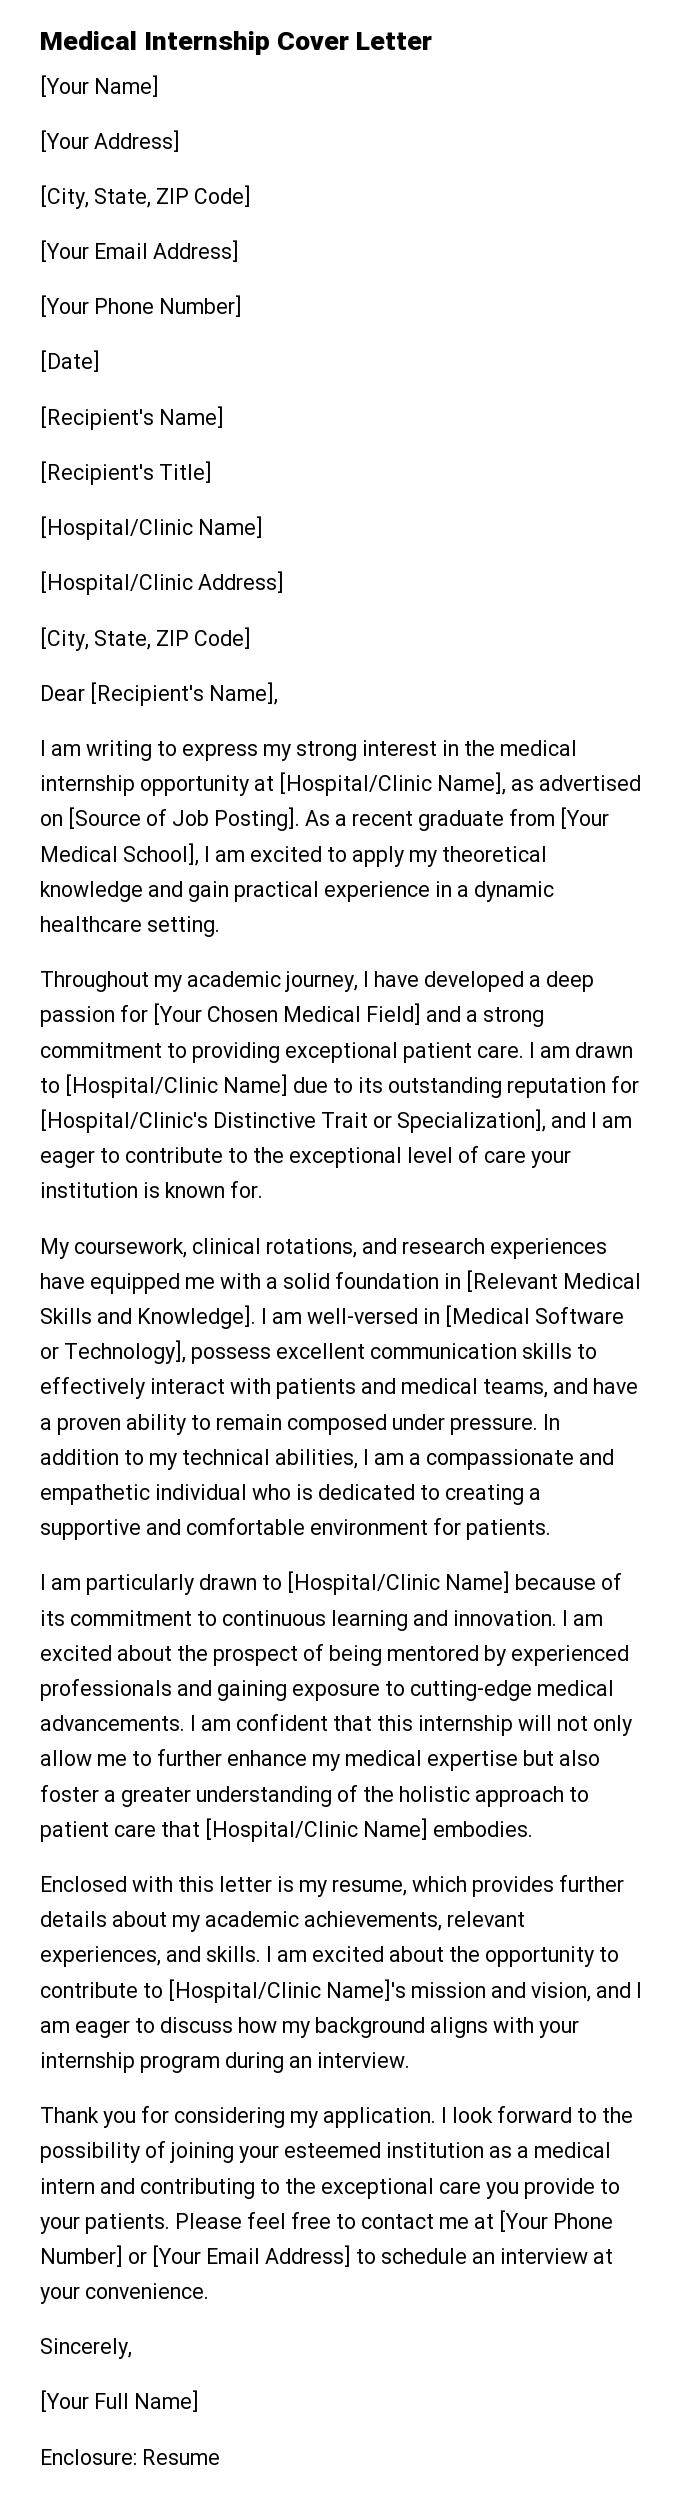 Medical Internship Cover Letter